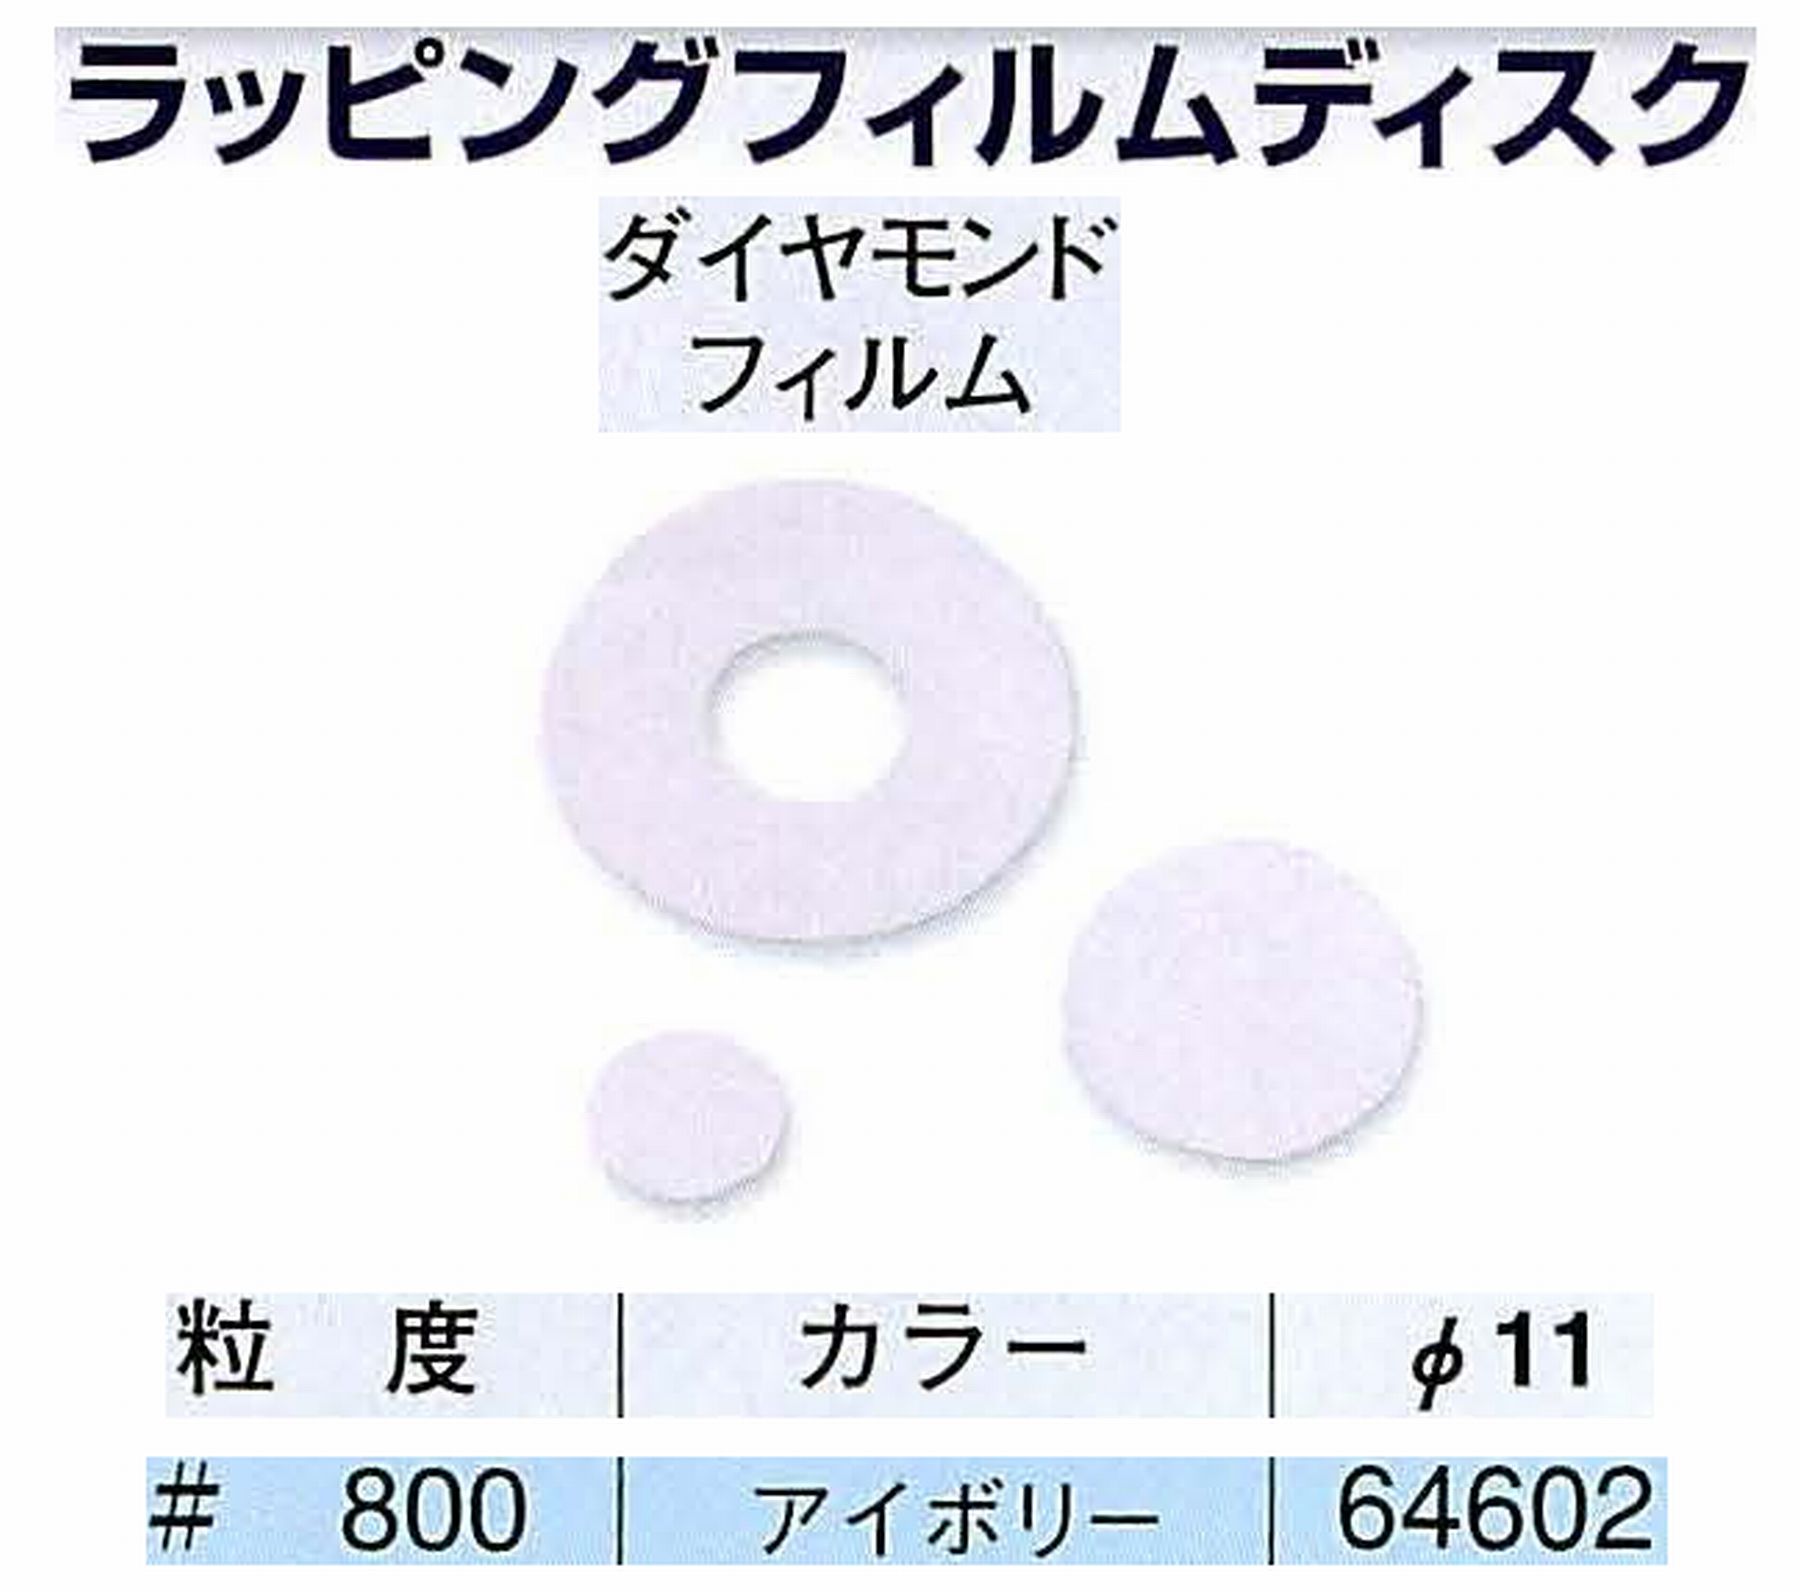 ナカニシ/NAKANISHI アングルグラインダ(電動・エアー) アングルアタッチメント専用工具 ラッピングフィルムディスク(ダイヤモンドフィルム) 64602